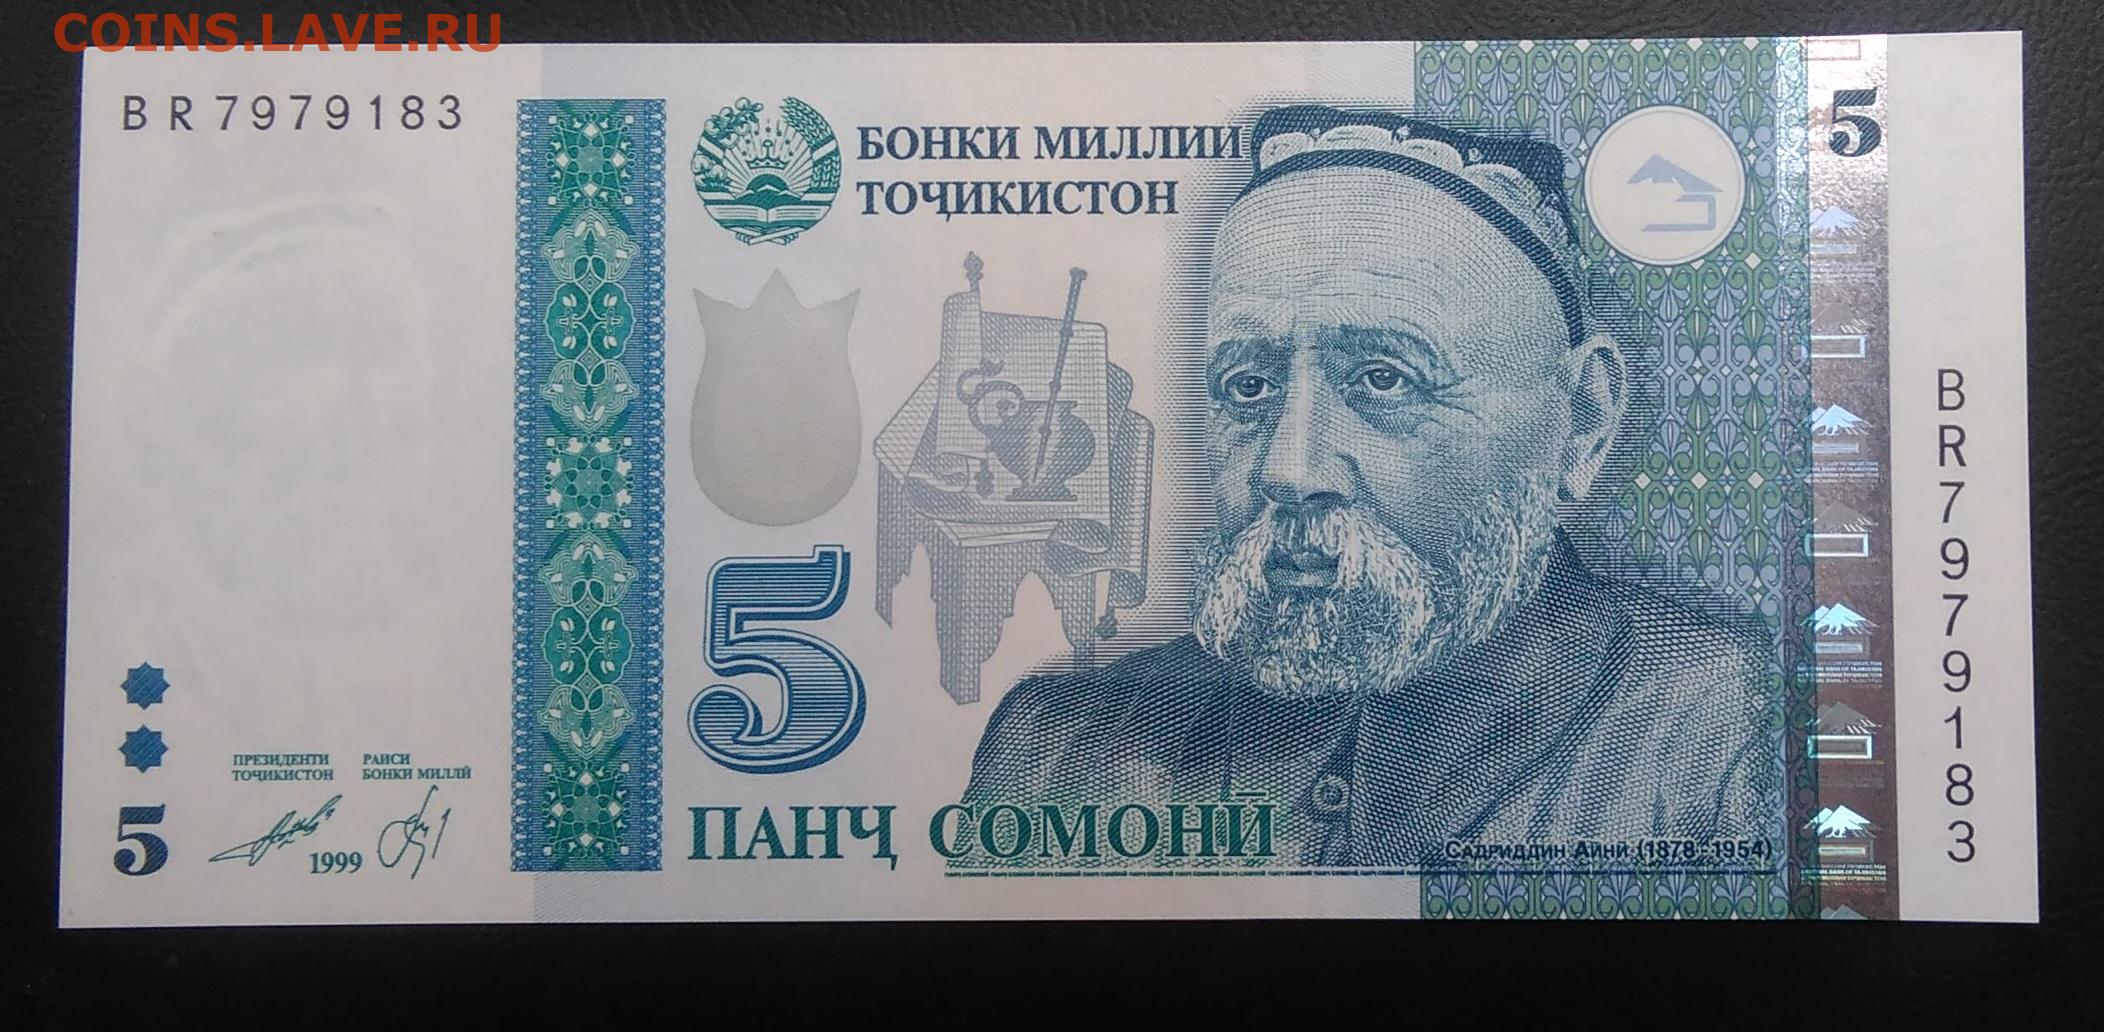 500 сомони в рублях на сегодня. Банкноты Таджикистана: 5 Сомони. Купюры Таджикистана 1000 Сомони. Банкнота 10 Сомони 1999 год Таджикистан. Купюра Таджикистана 500 Сомони.